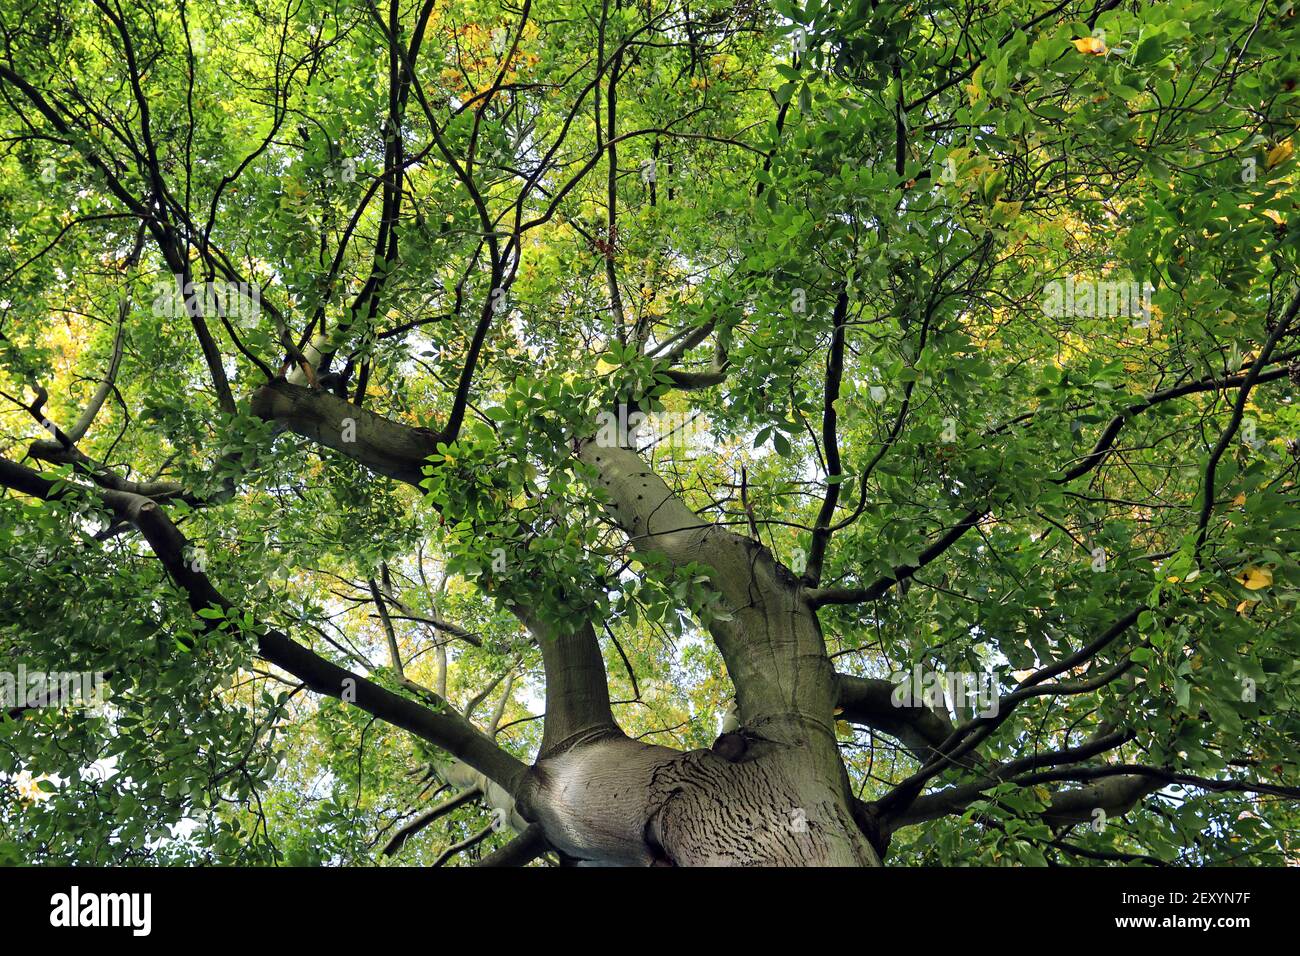 Arbre de Pignut Hickory (Carya glabra), début octobre. En regardant vers le ciel de feuilles vertes, juste en commençant à devenir jaune à mesure que la saison change Banque D'Images